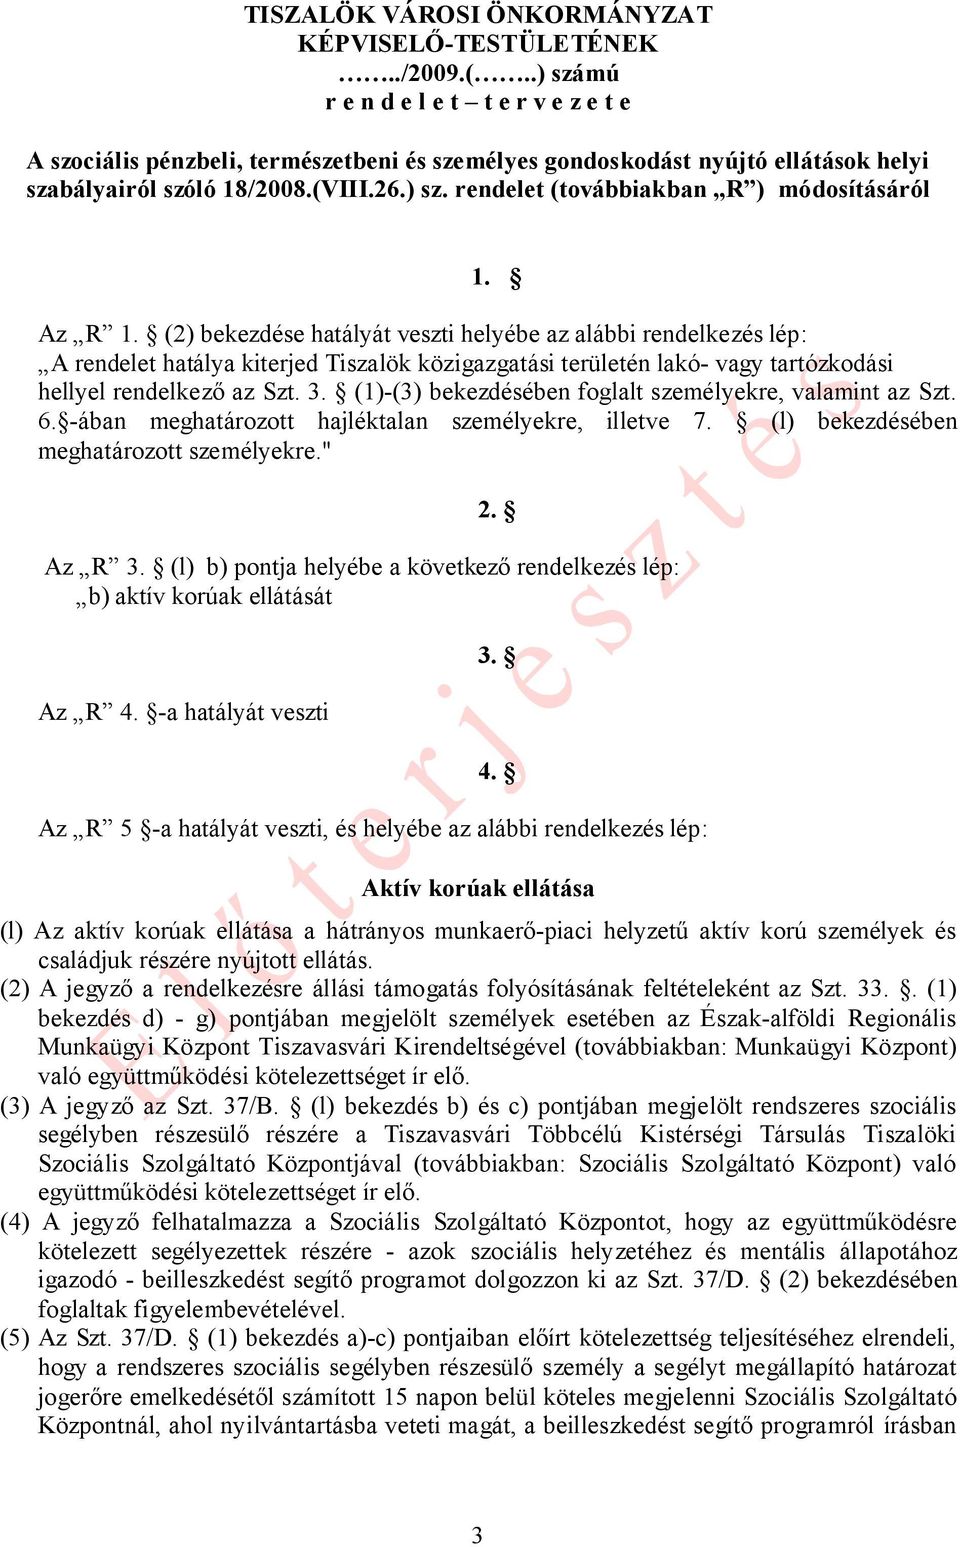 Az R 1. (2) bekezdése hatályát veszti helyébe az alábbi rendelkezés lép: A rendelet hatálya kiterjed Tiszalök közigazgatási területén lakó- vagy tartózkodási hellyel rendelkező az Szt. 3.